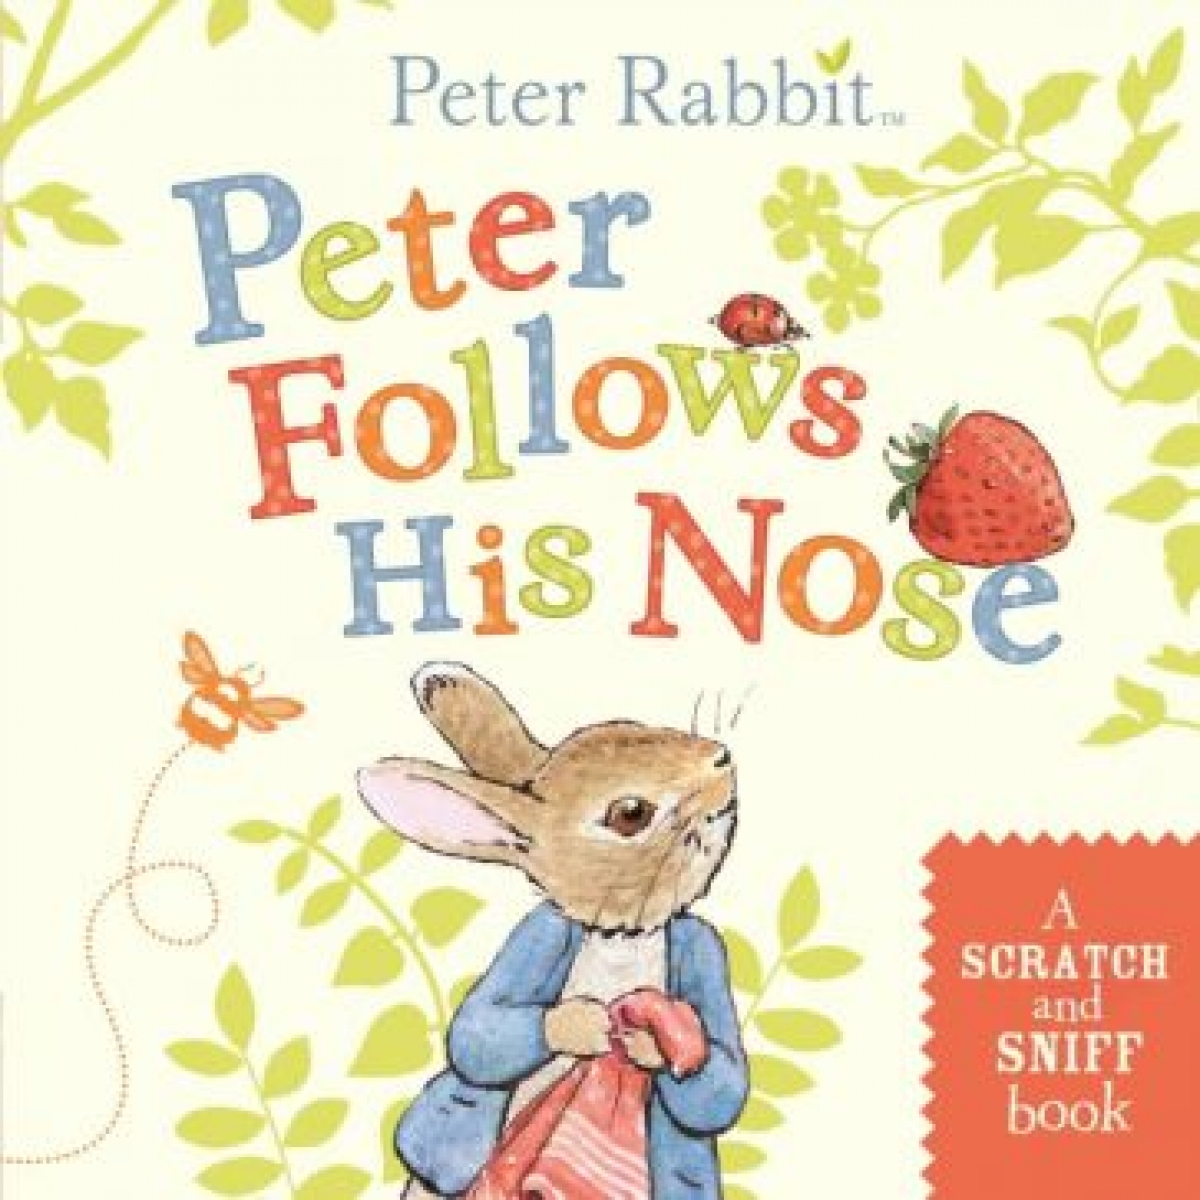 Potter Beatrix Peter follows his nose 